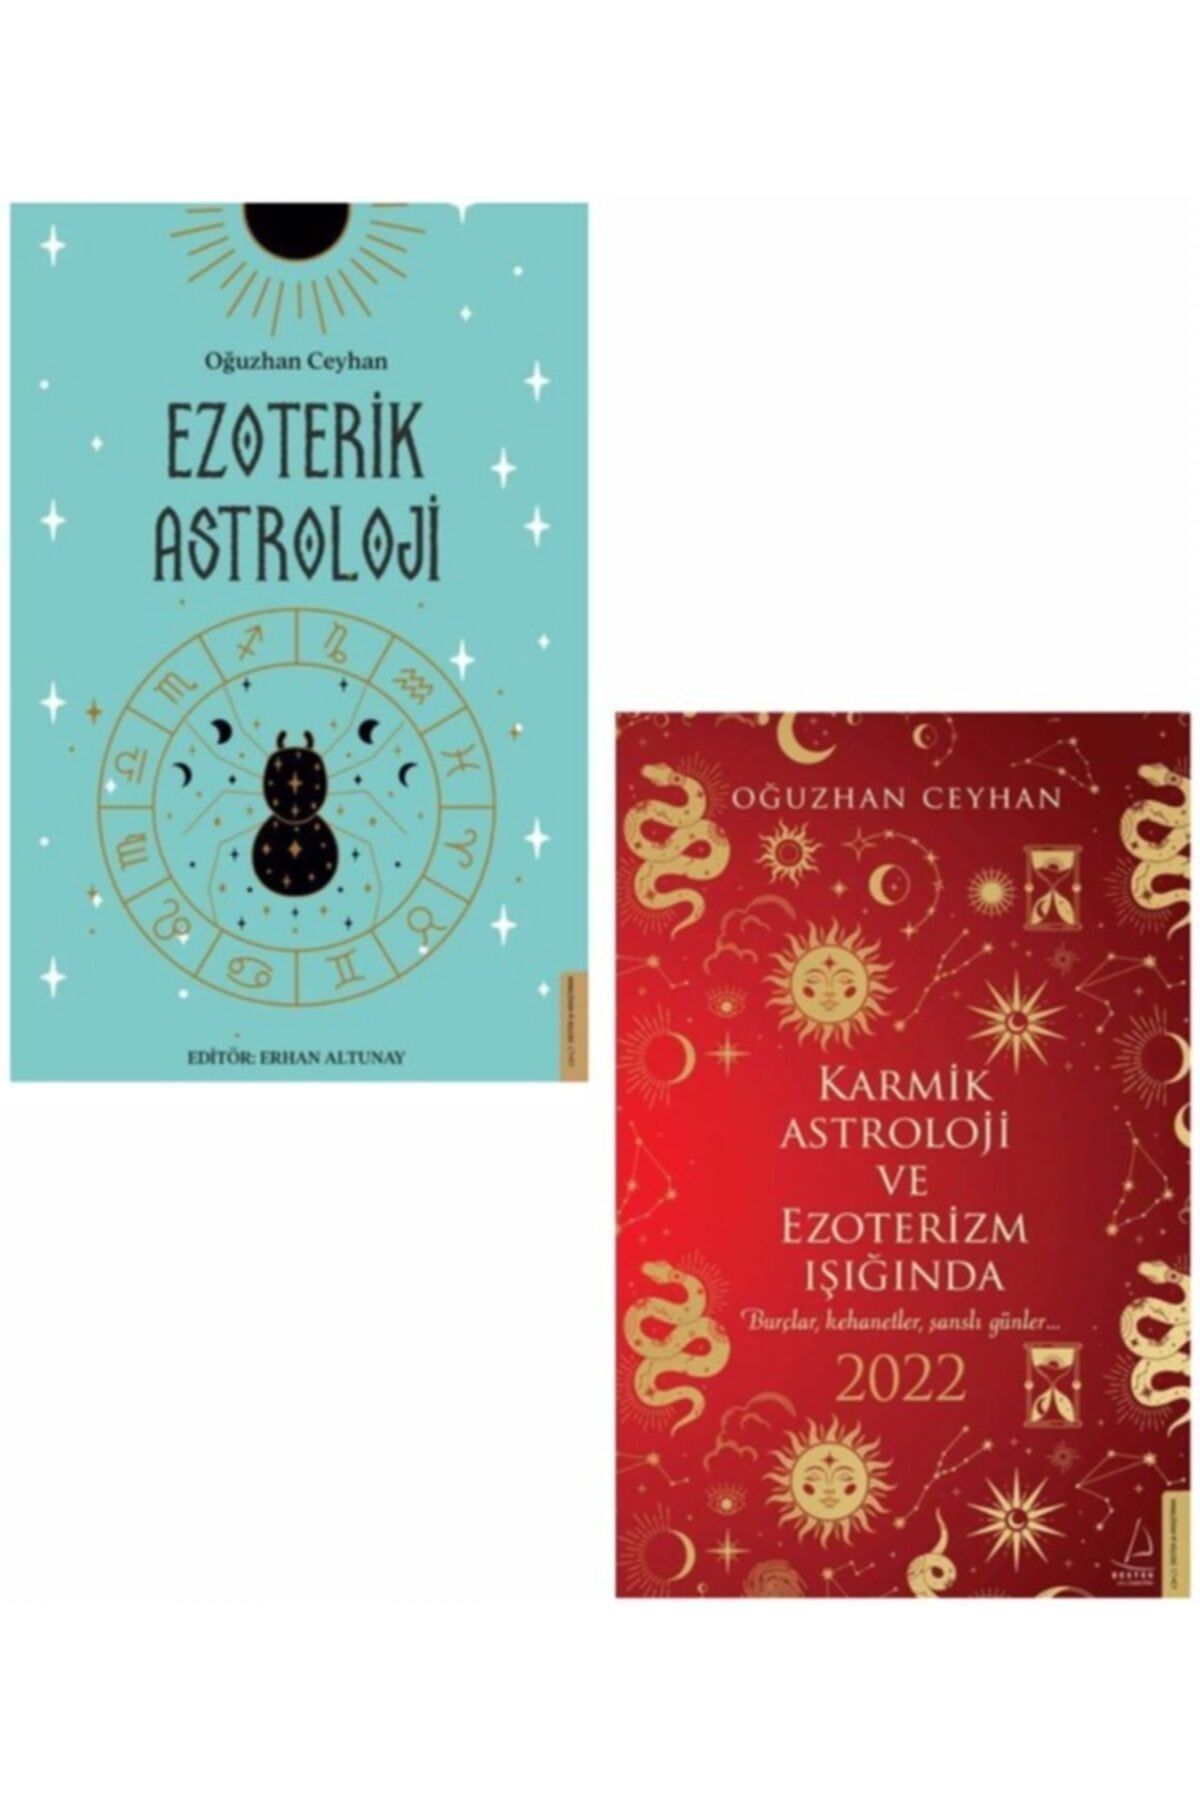 Destek Yayınları Karmik Astroloji Ve Ezoterizm Işığında 2022 - Ezoterik Astroloji & Oğuzhan Ceyhan 2 Kitap